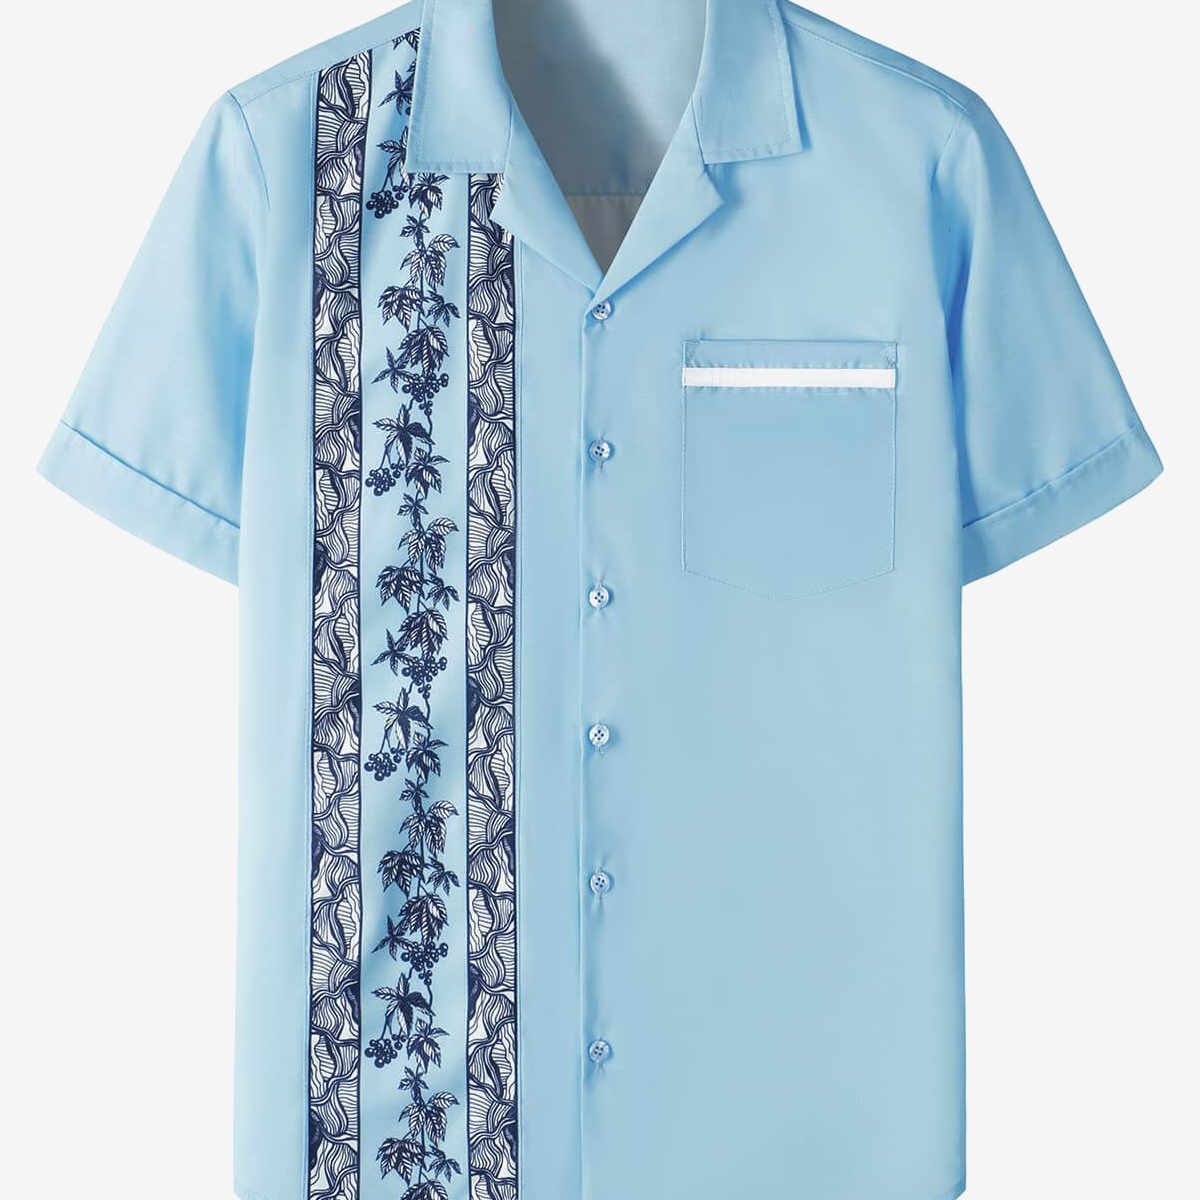 Men's Floral Print 50s Rockabilly Style Retro Bowling Summer Beach Light Blue Short Sleeve Shirt